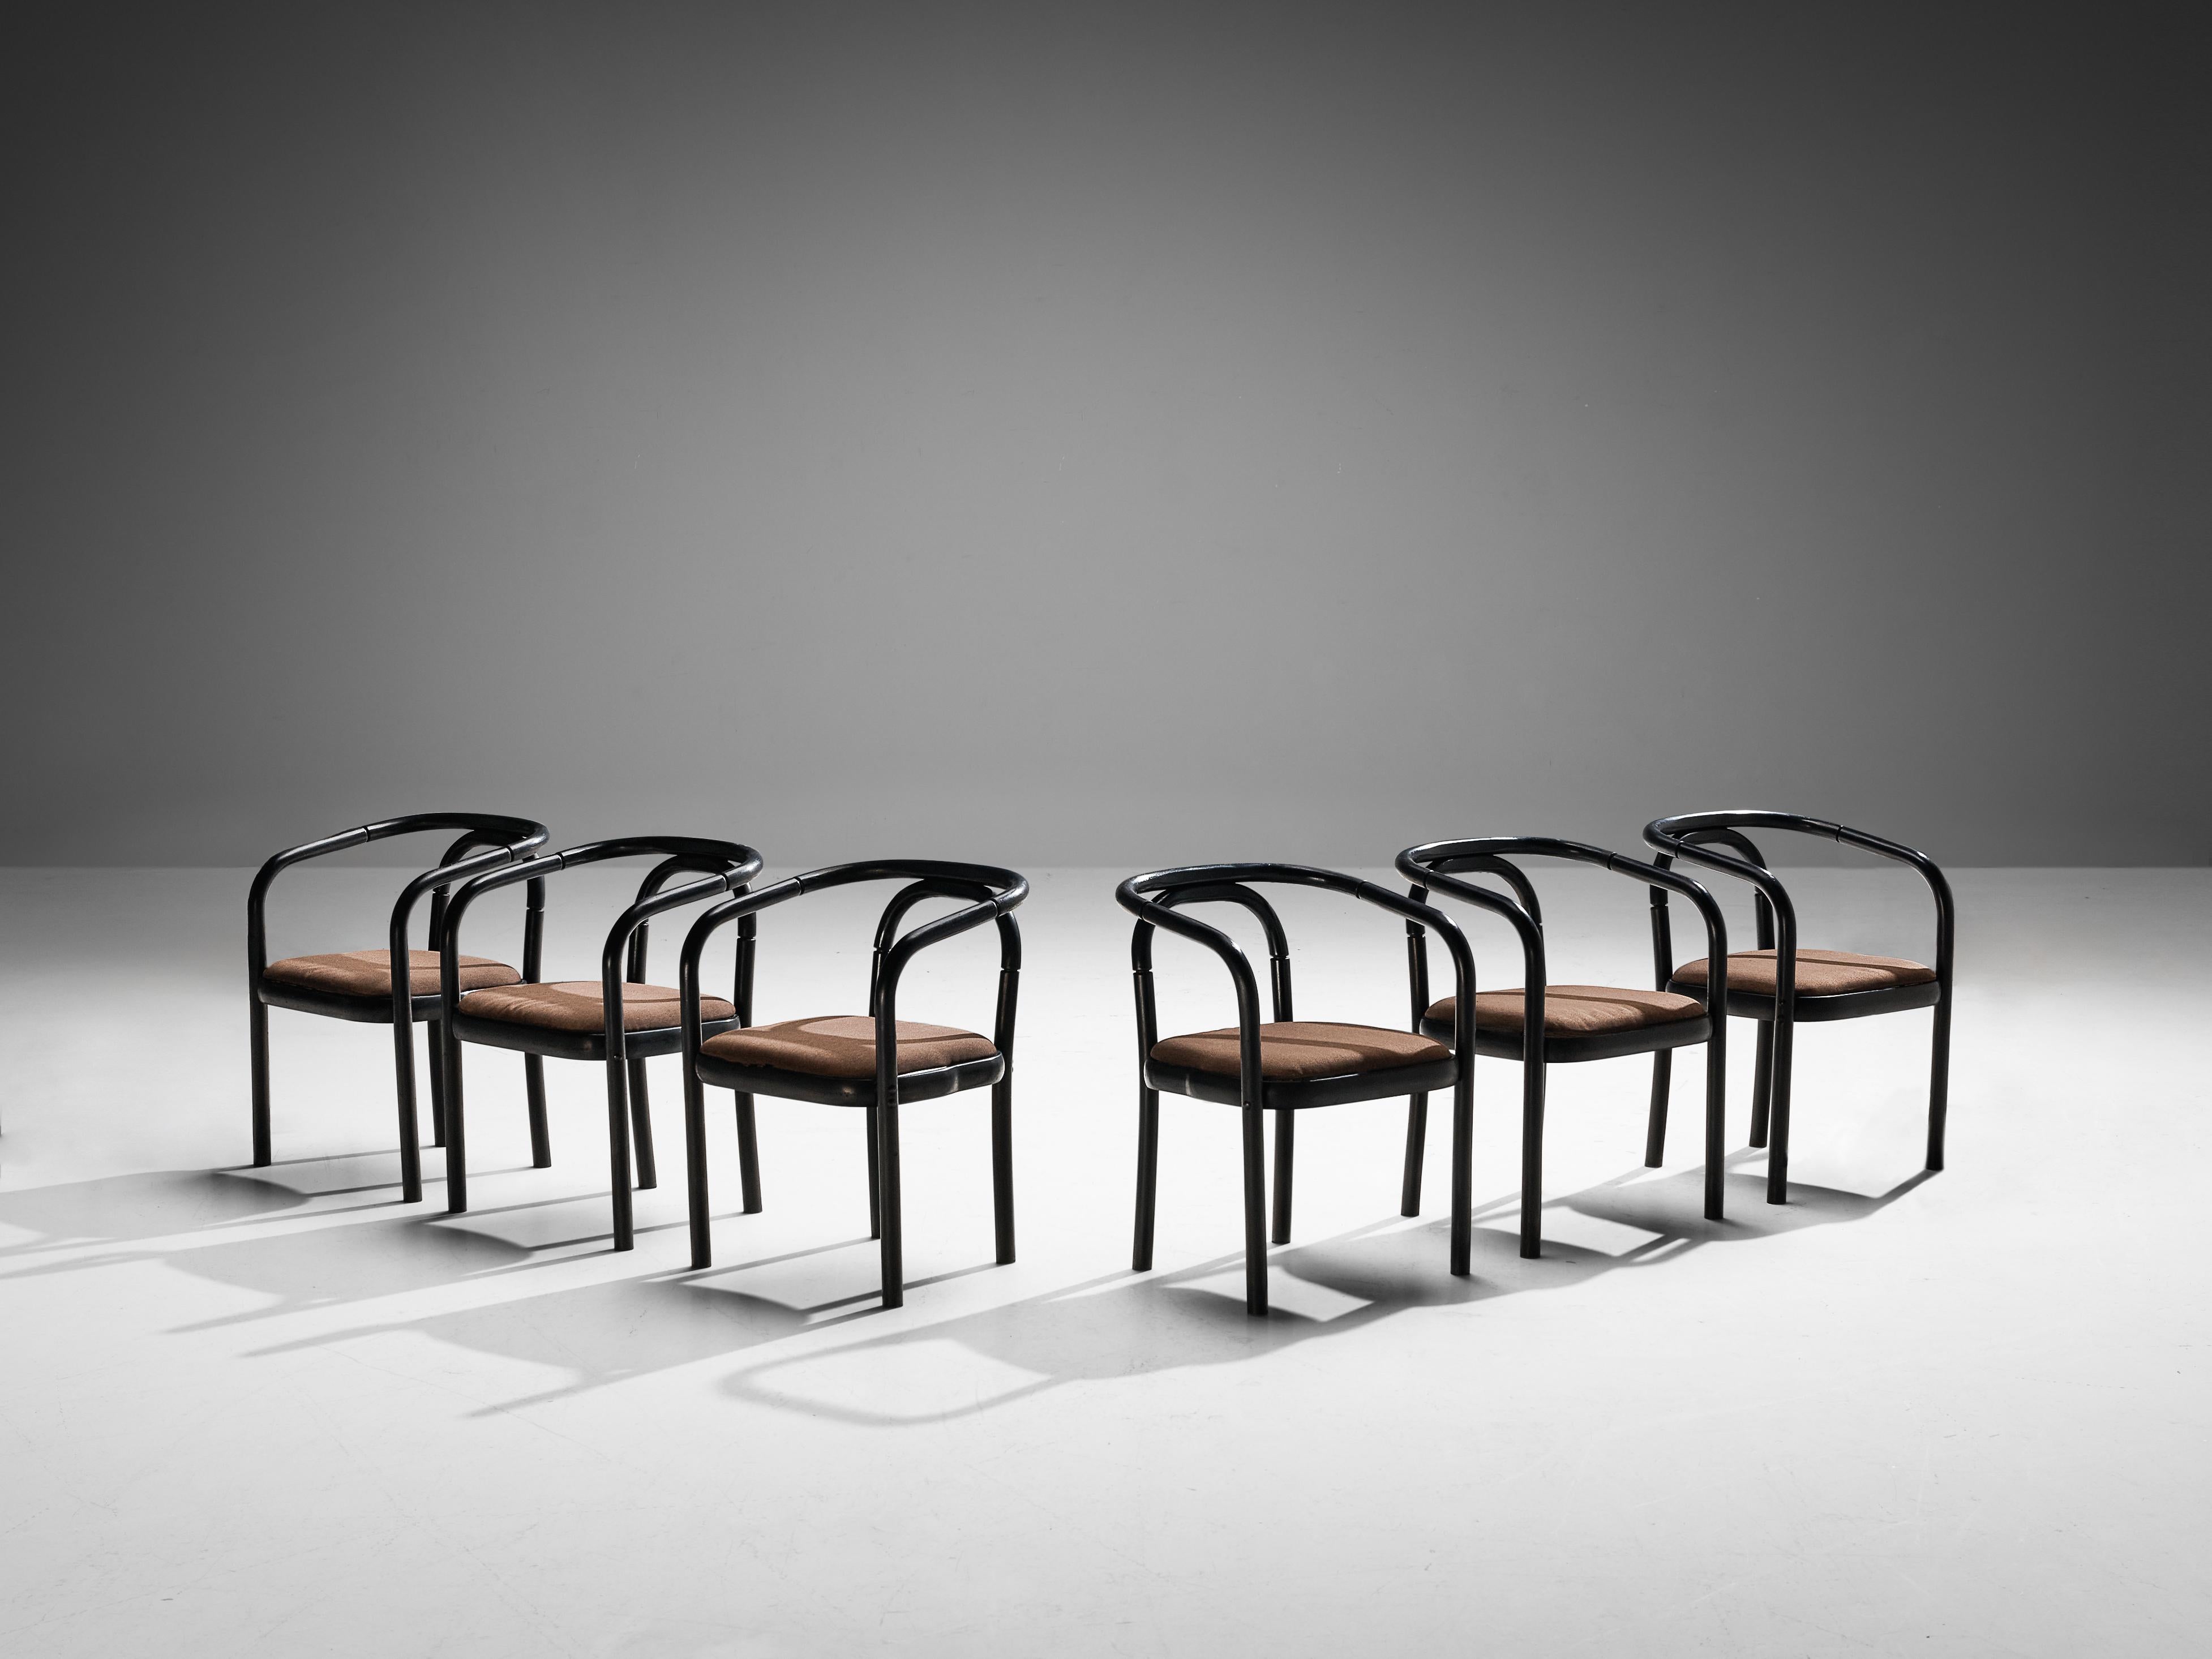 Antonin Suman pour TON, ensemble de six fauteuils, modèle E4309, bois laqué, tissu, République tchèque, 1977

Un ensemble de six chaises de salle à manger qui ont été conçues par Antonin Suman et fabriquées par TON. Ces chaises sont dotées d'un